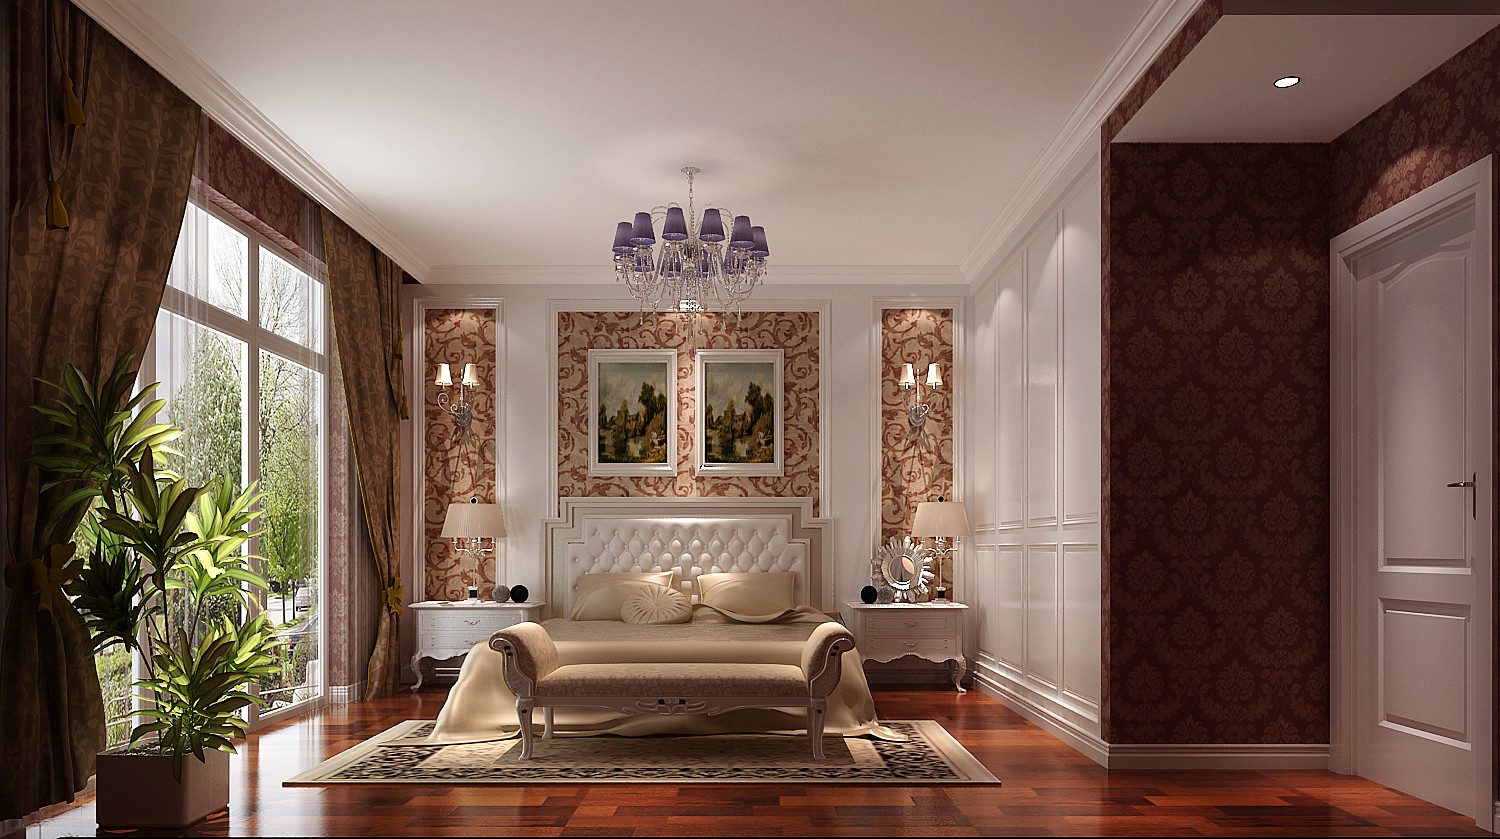 简约 欧式 现代 温馨 浪漫 奢华 高贵 精致 别墅 卧室图片来自重庆高度国际装饰工程有限公司在鲁能七号院-欧式风格的分享